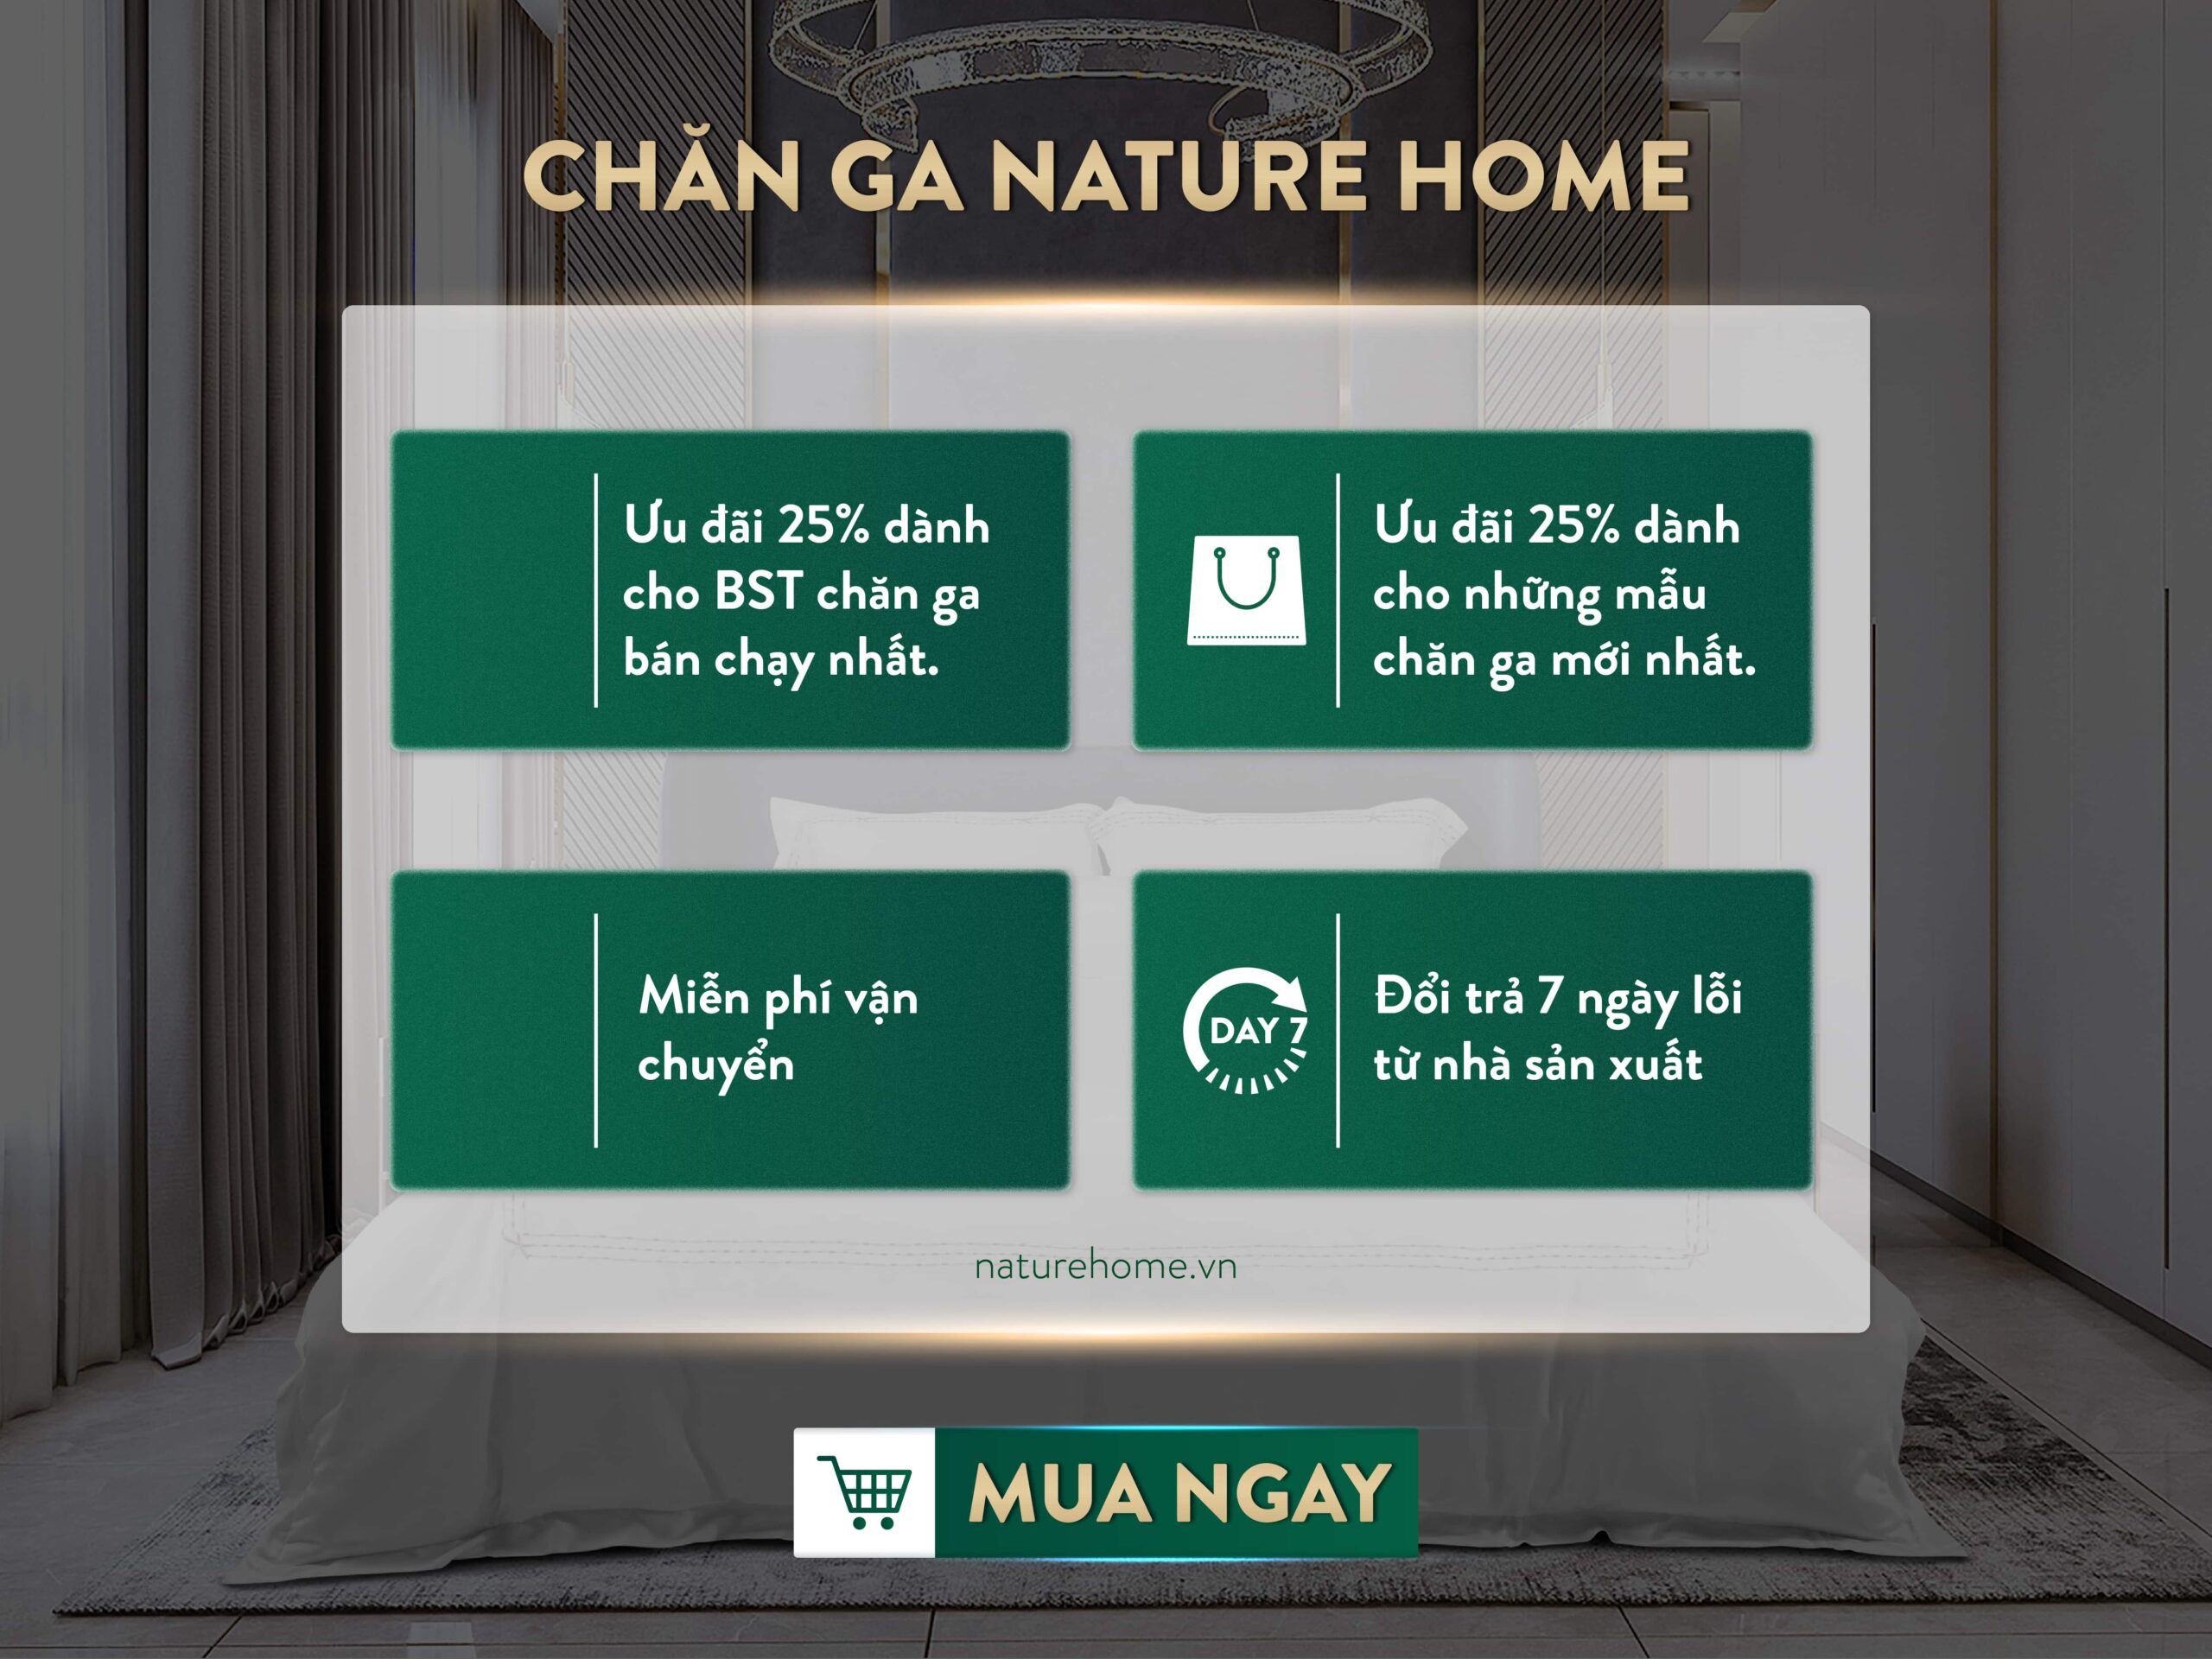 Chuong-trinh-khuyen-mai-chan-ga-nature-home